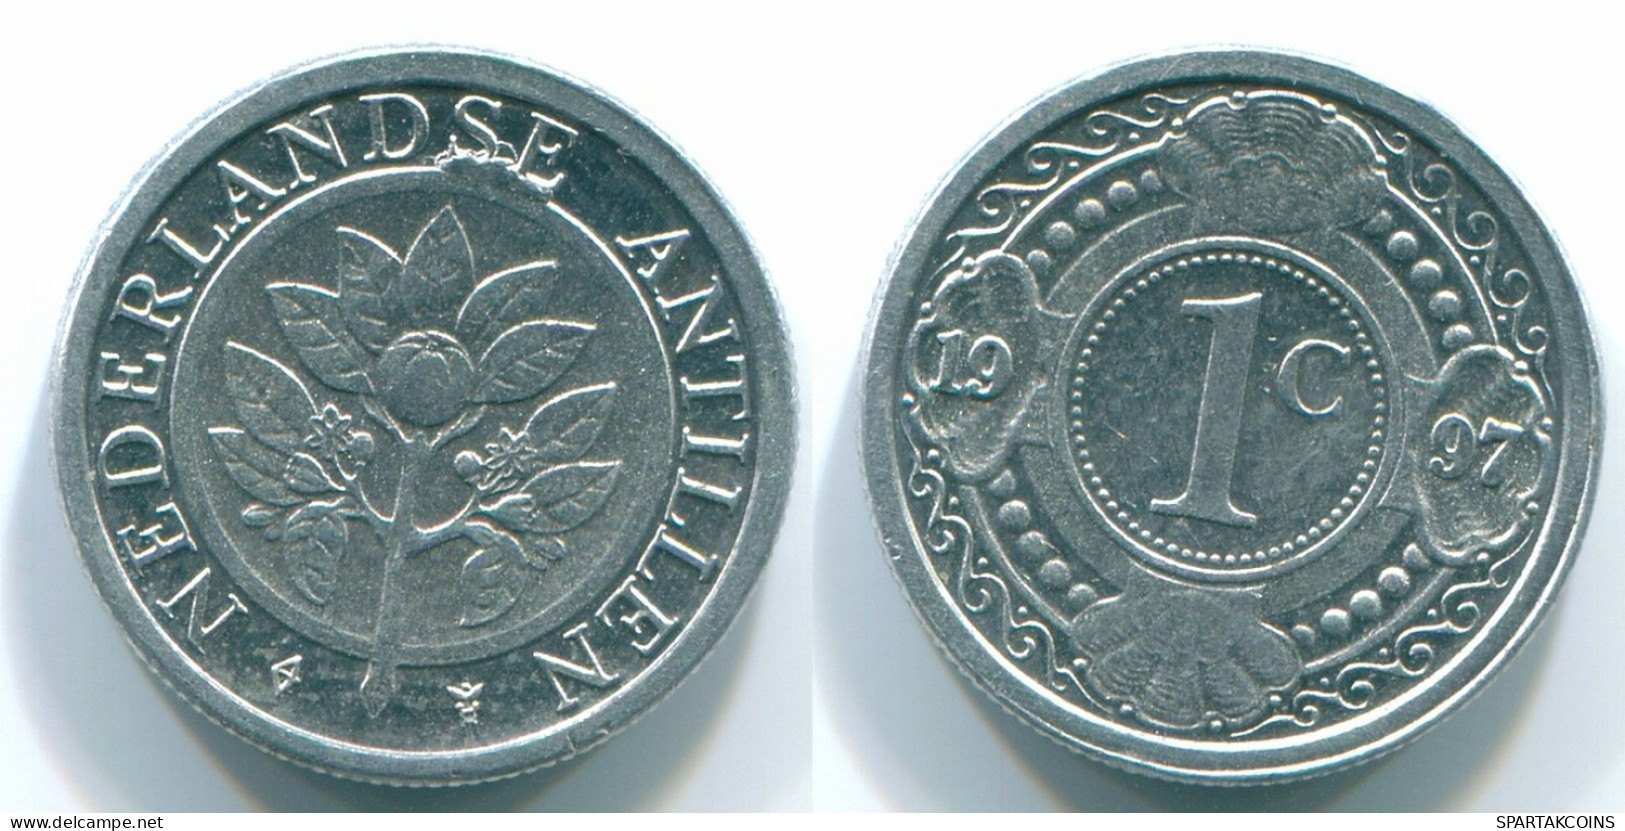 1 CENT 1996 NETHERLANDS ANTILLES Aluminium Colonial Coin #S13151.U.A - Niederländische Antillen